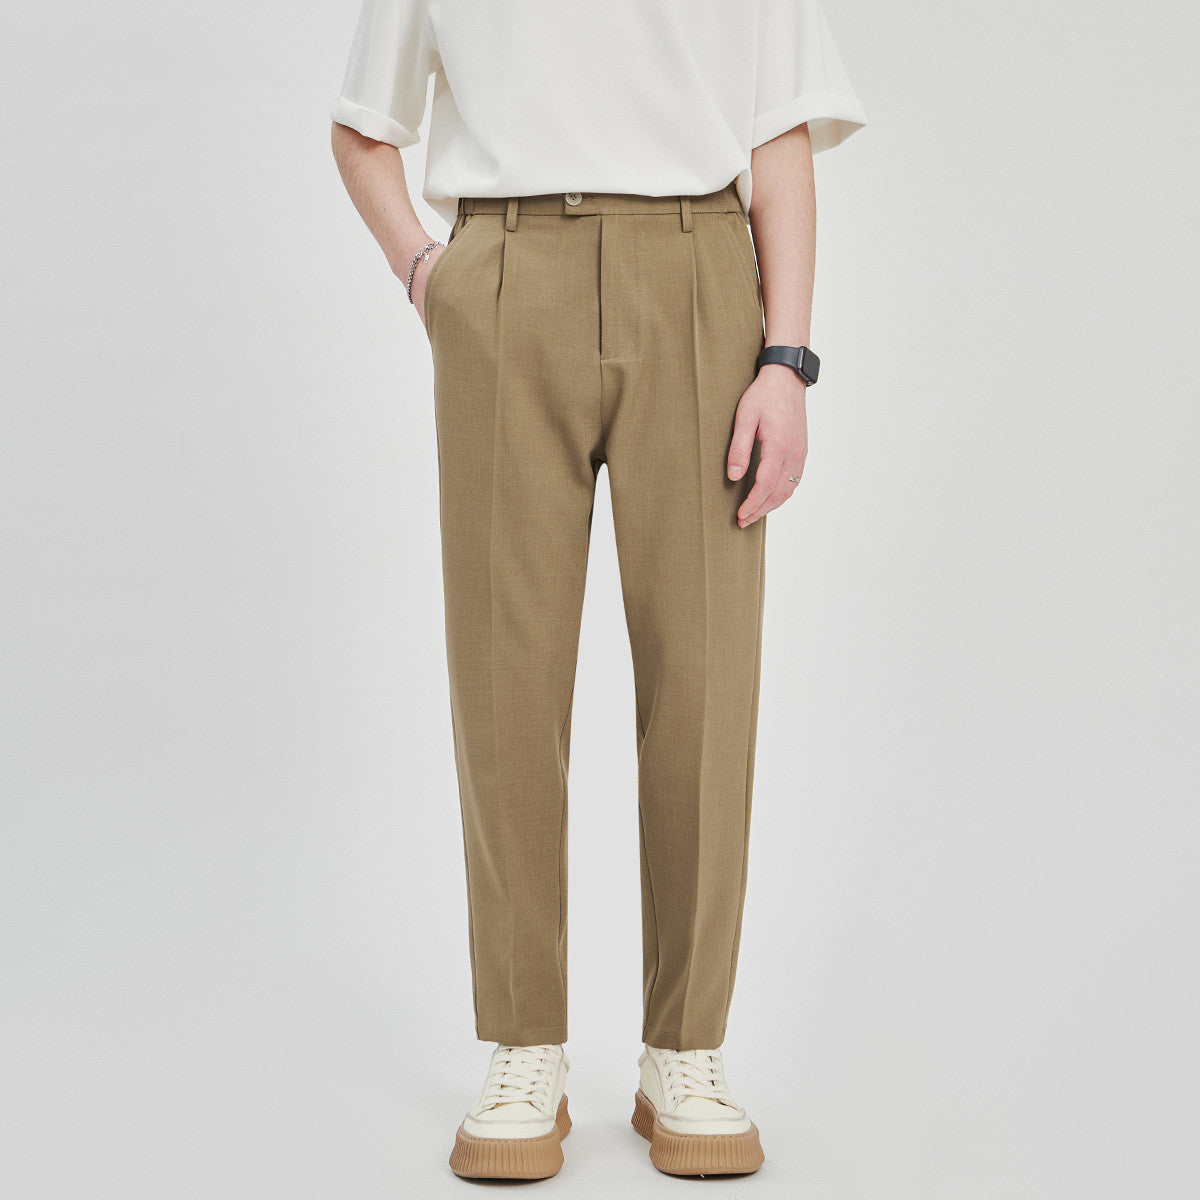 Loose Cotton Casual Straight-Leg Suit Pants for Men